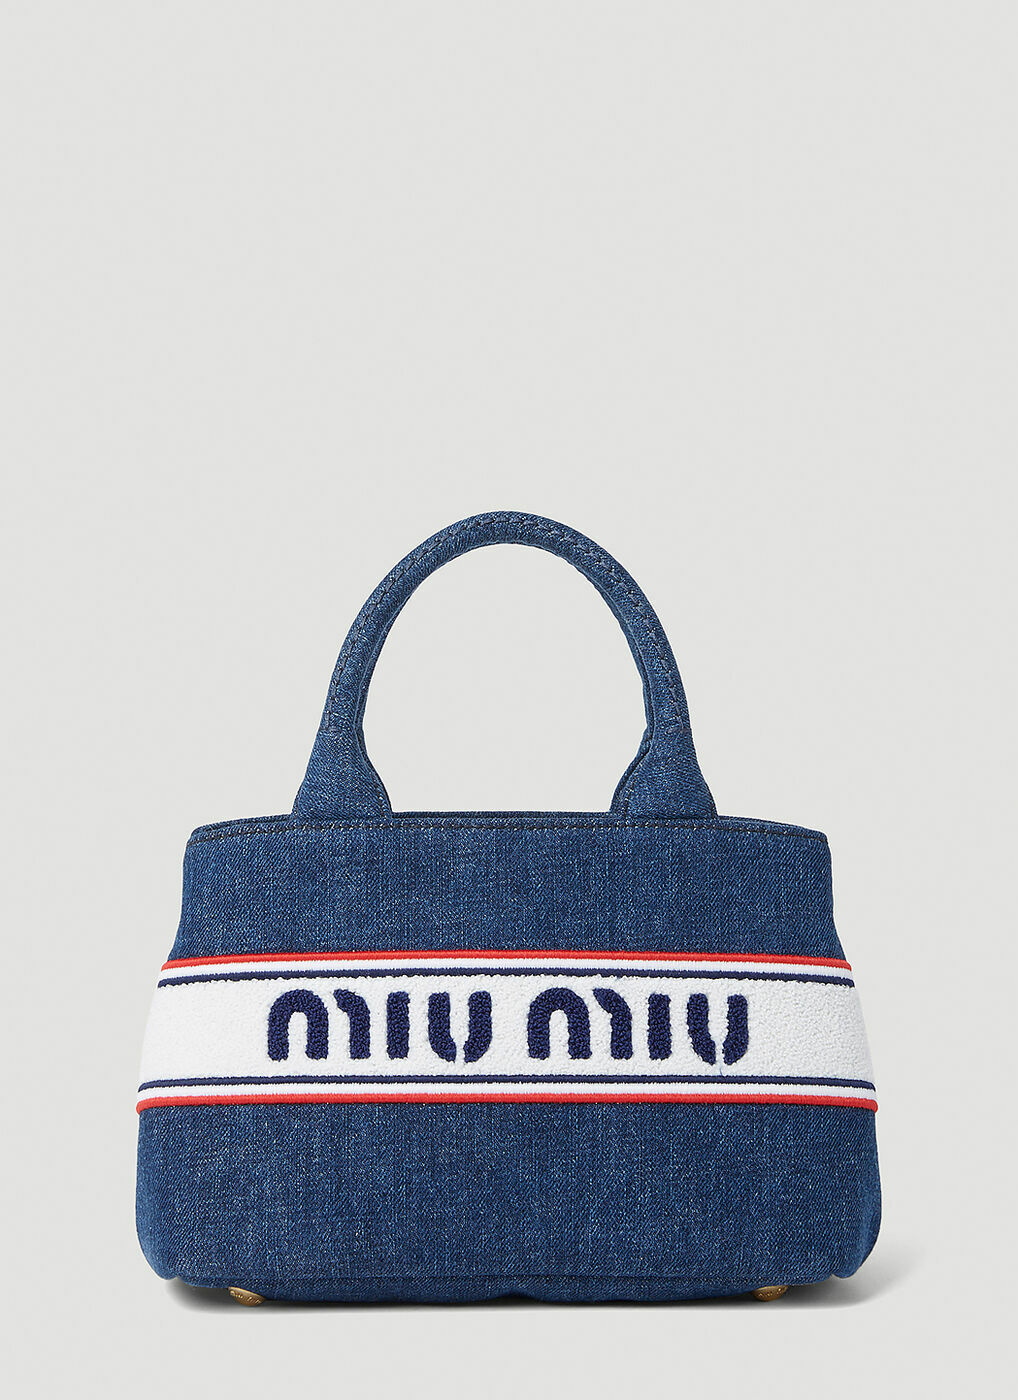 Miu Miu Spirit Logo Patch Bag